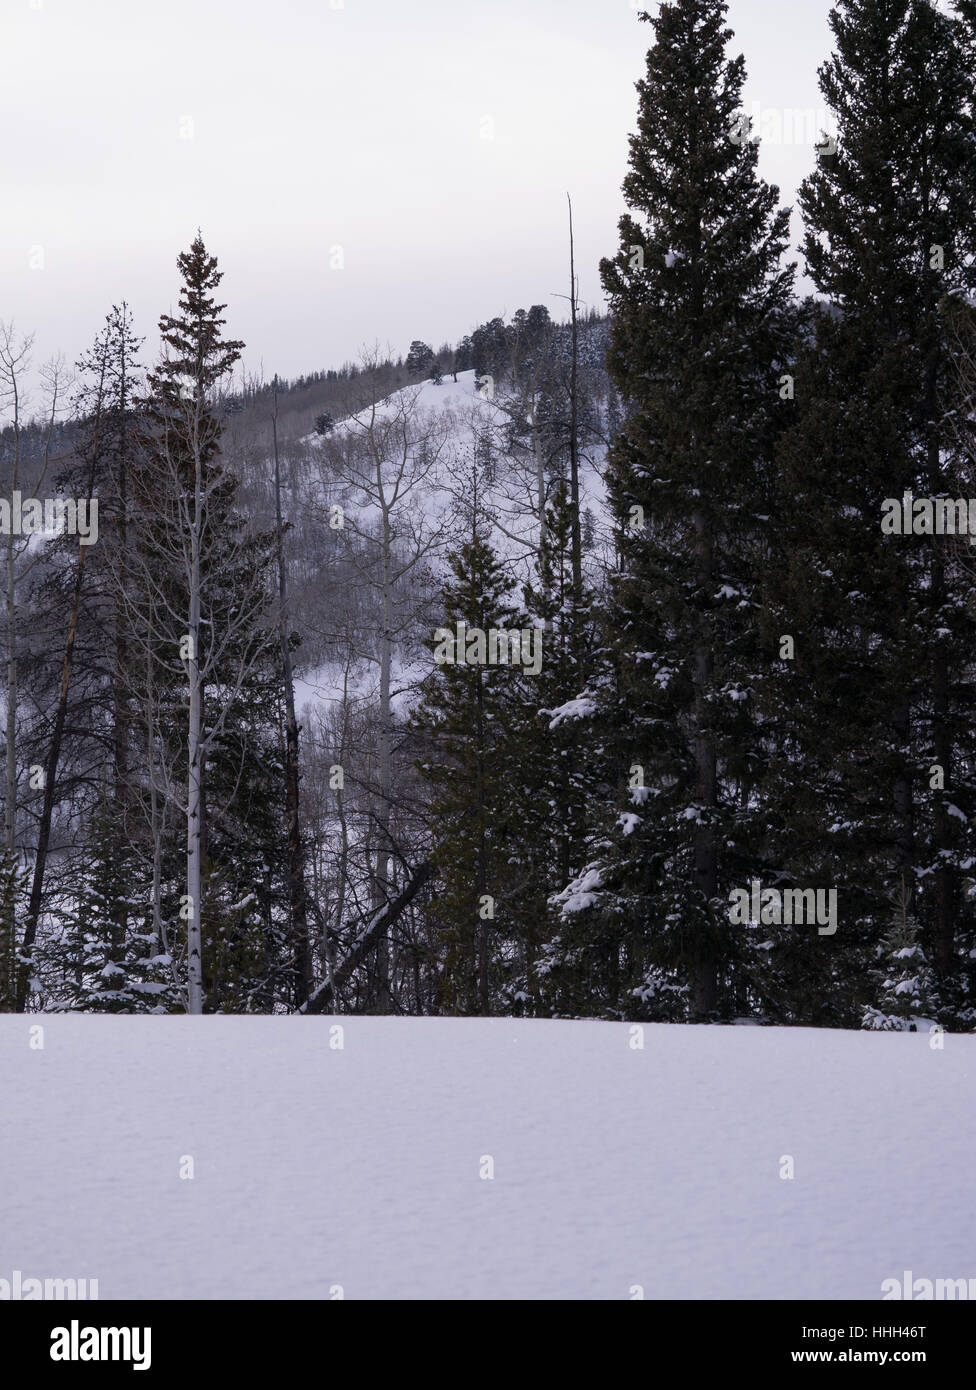 Aspen misti e la foresta di pini, fresche, neve pesante in primo piano Foto Stock